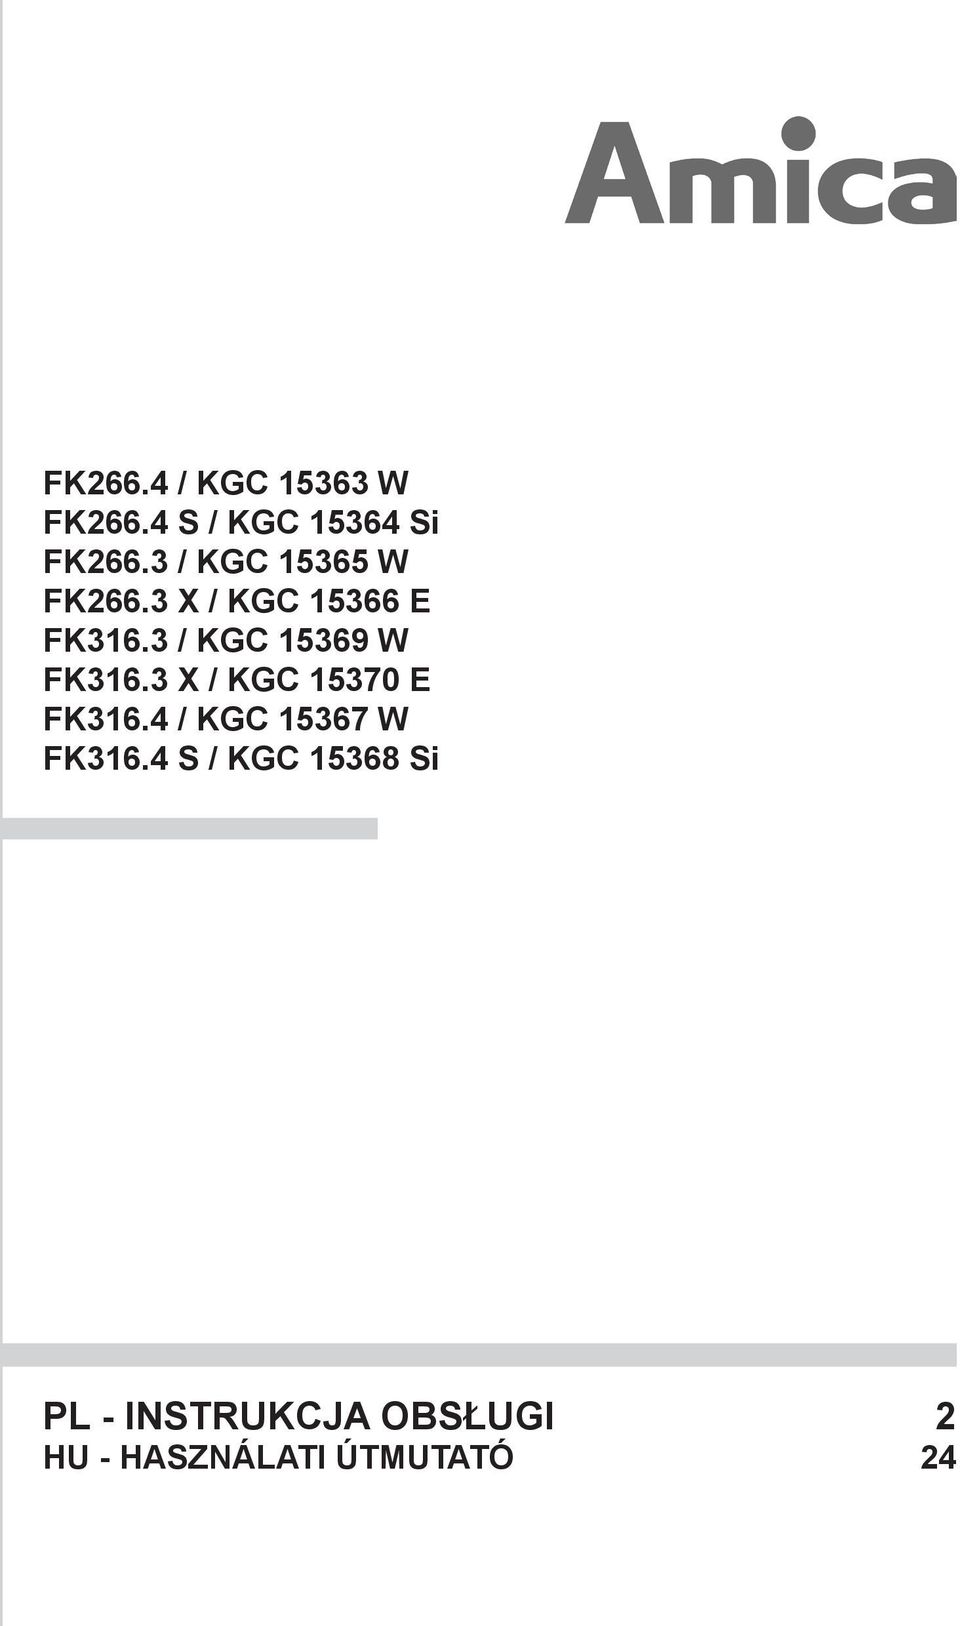 3 / KGC 15369 W FK316.3 X / KGC 15370 E FK316.